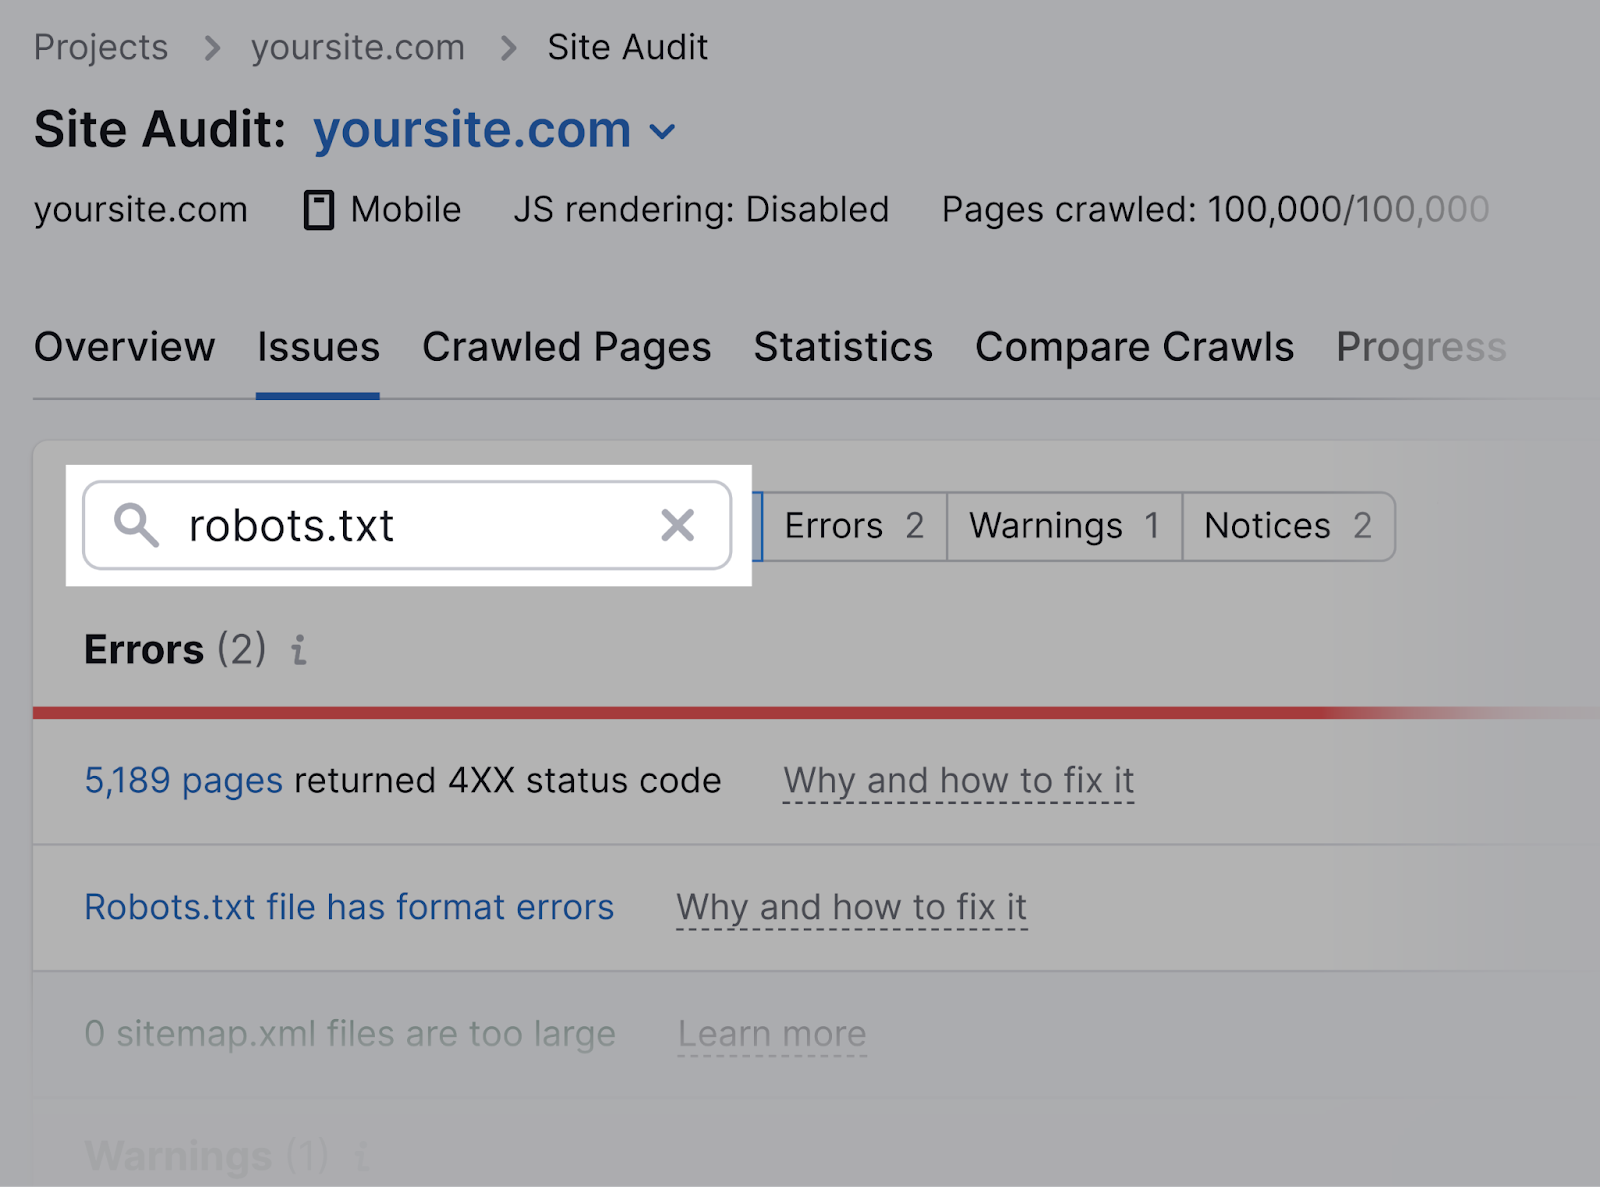 Recherchez « robots.txt » dans l'audit du site